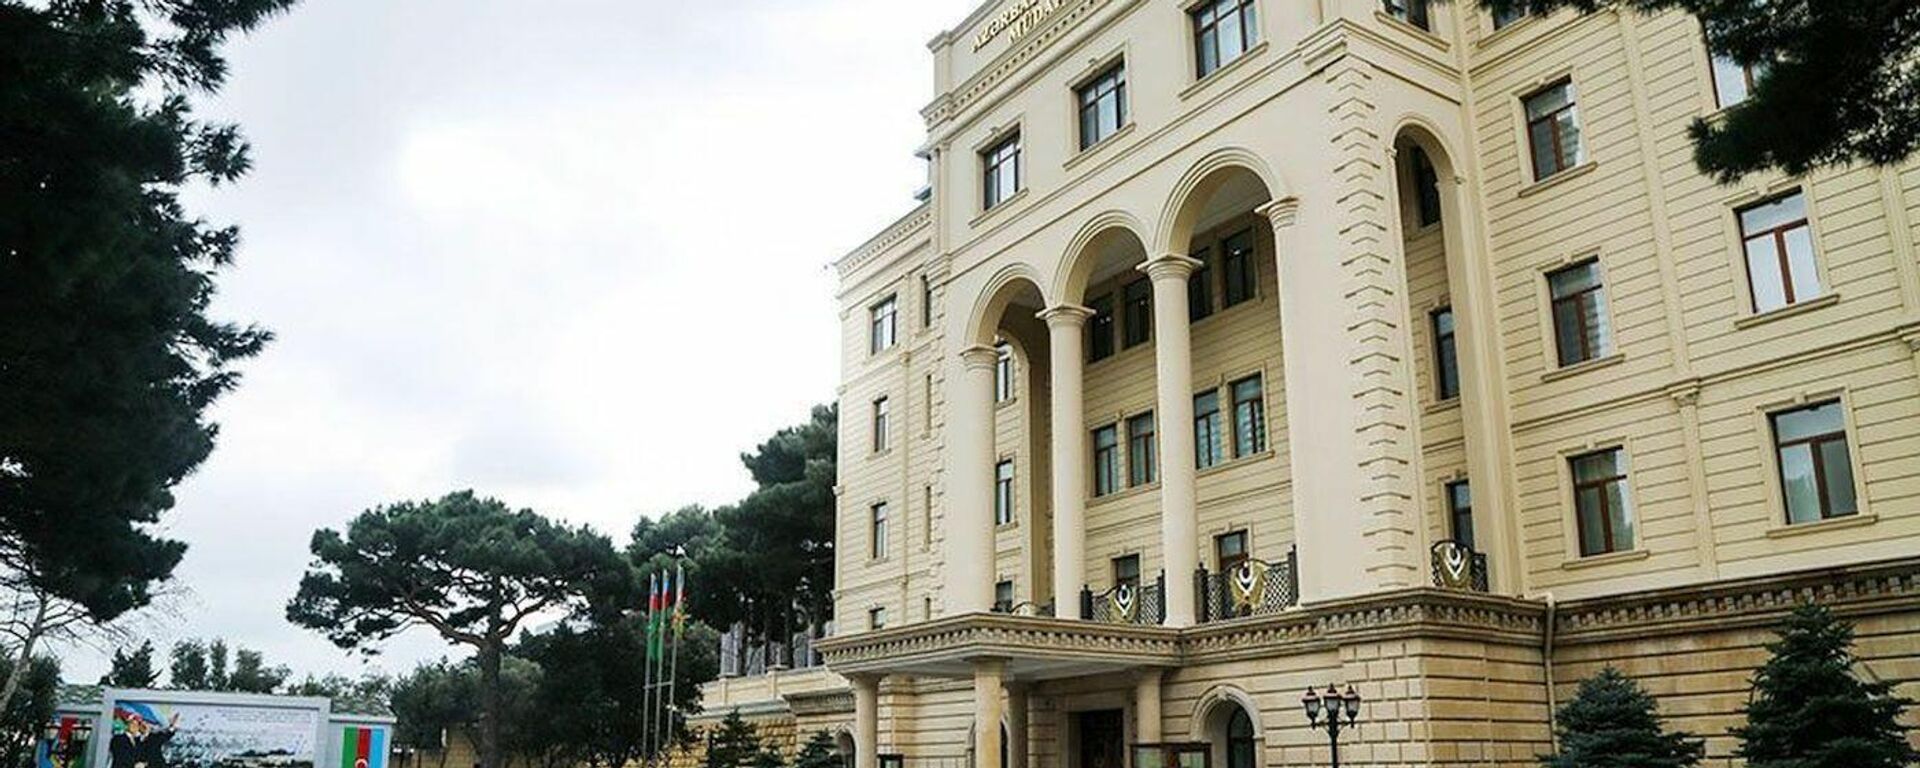 Здание министерства обороны Азербайджана здание Минобороны АР  - Sputnik Азербайджан, 1920, 10.11.2021